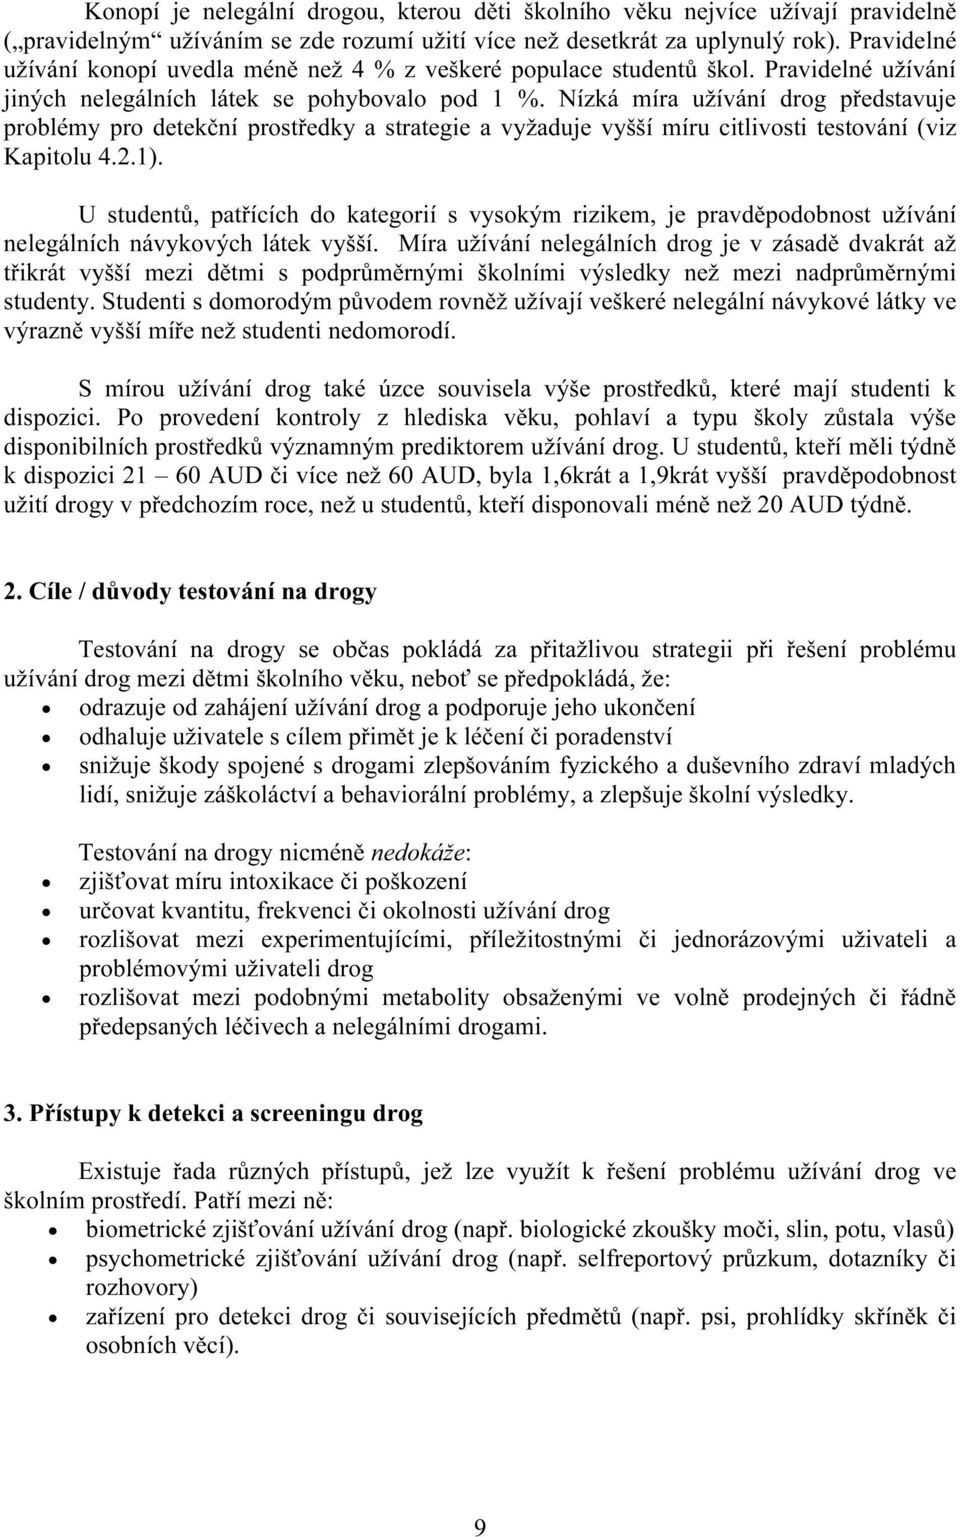 Nízká míra užívání drog představuje problémy pro detekční prostředky a strategie a vyžaduje vyšší míru citlivosti testování (viz Kapitolu 4.2.1).